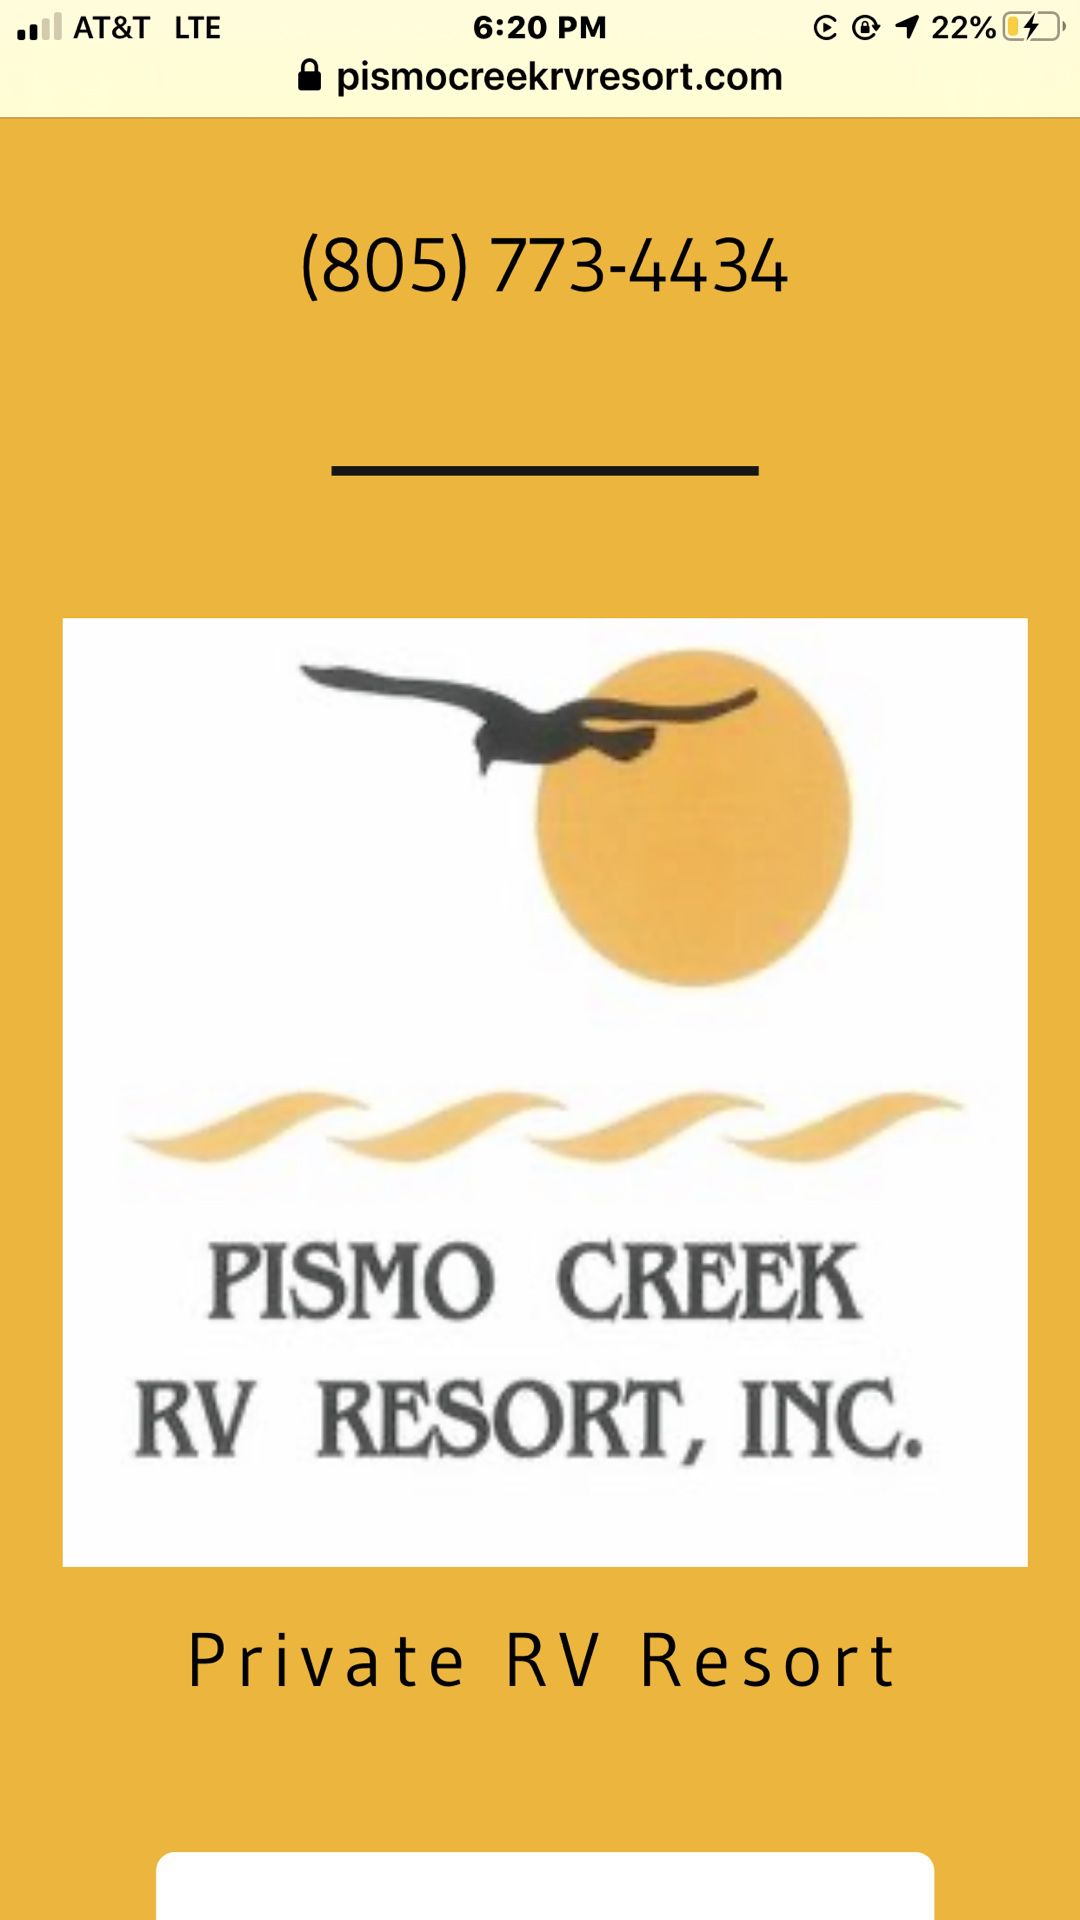 Pismo Creek RV Resort Lifetime Membership